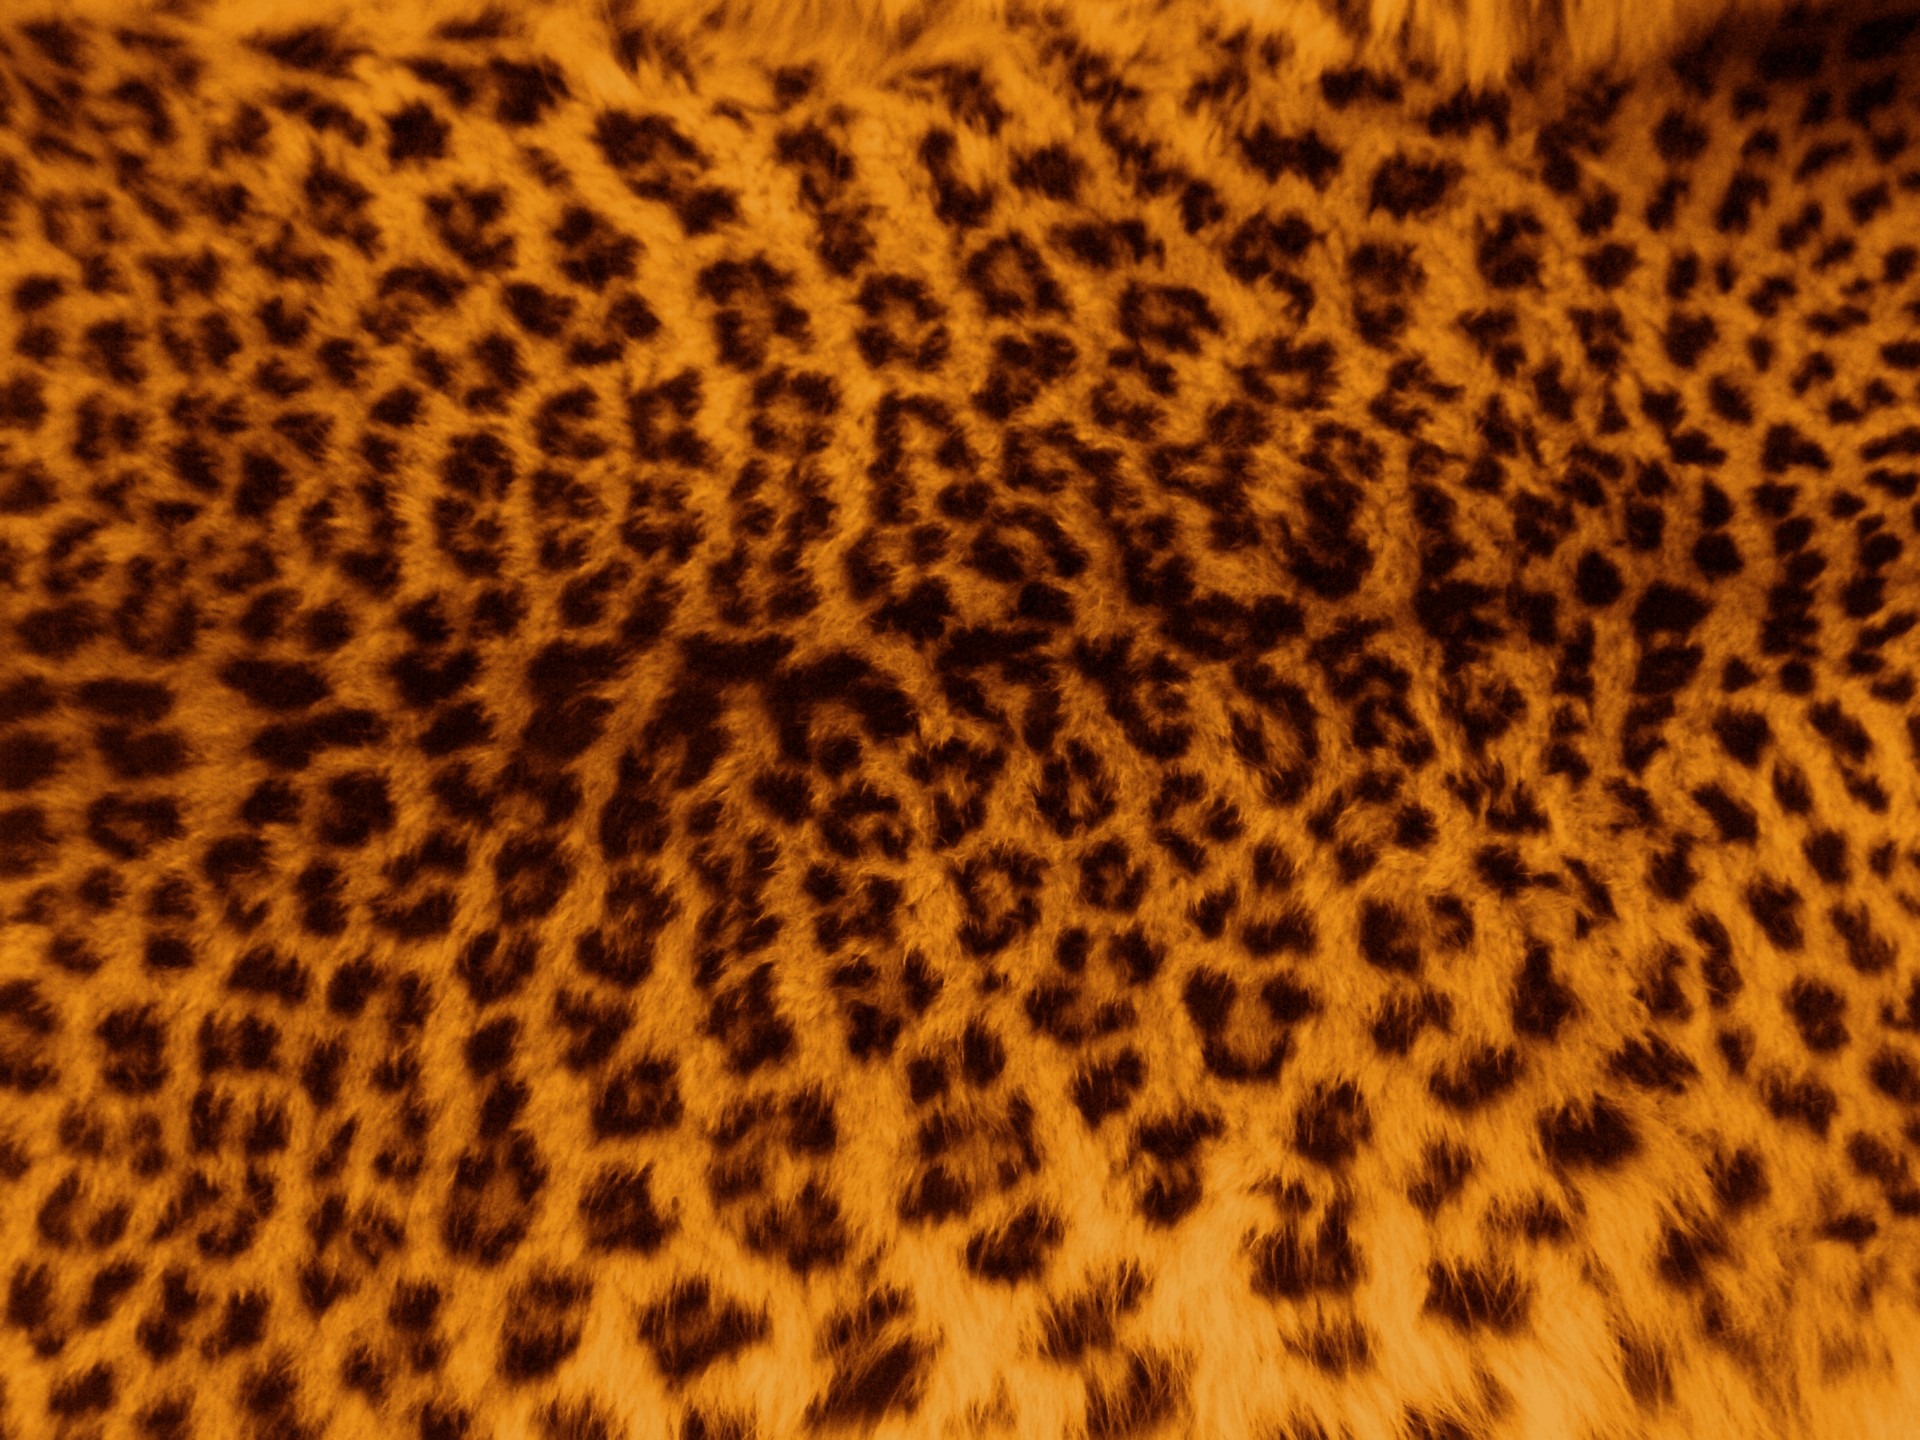 Wallpapers texture wildlife fur on the desktop